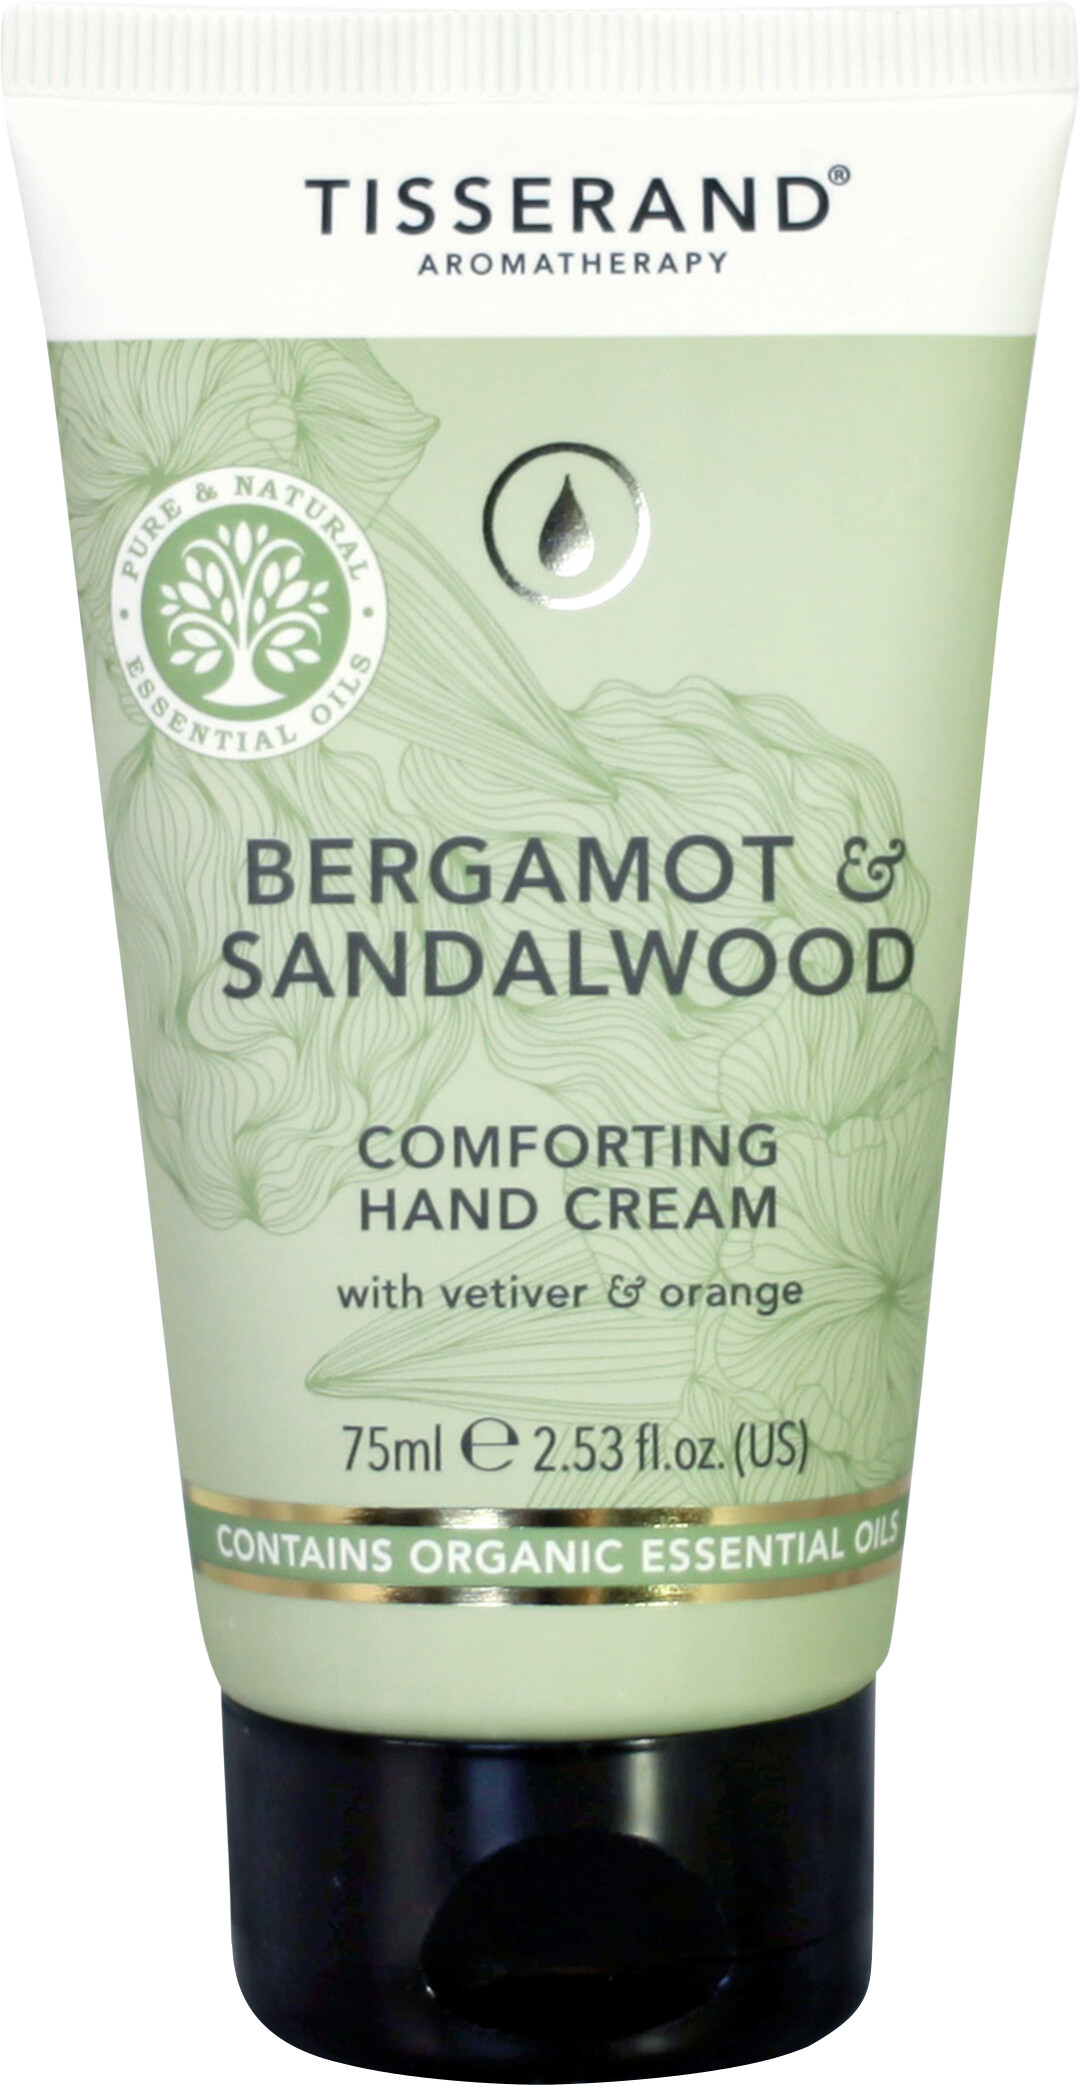 Tisserand Aromatherapy Bergamot & Sandalwood Comforting Hand Cream 75ml